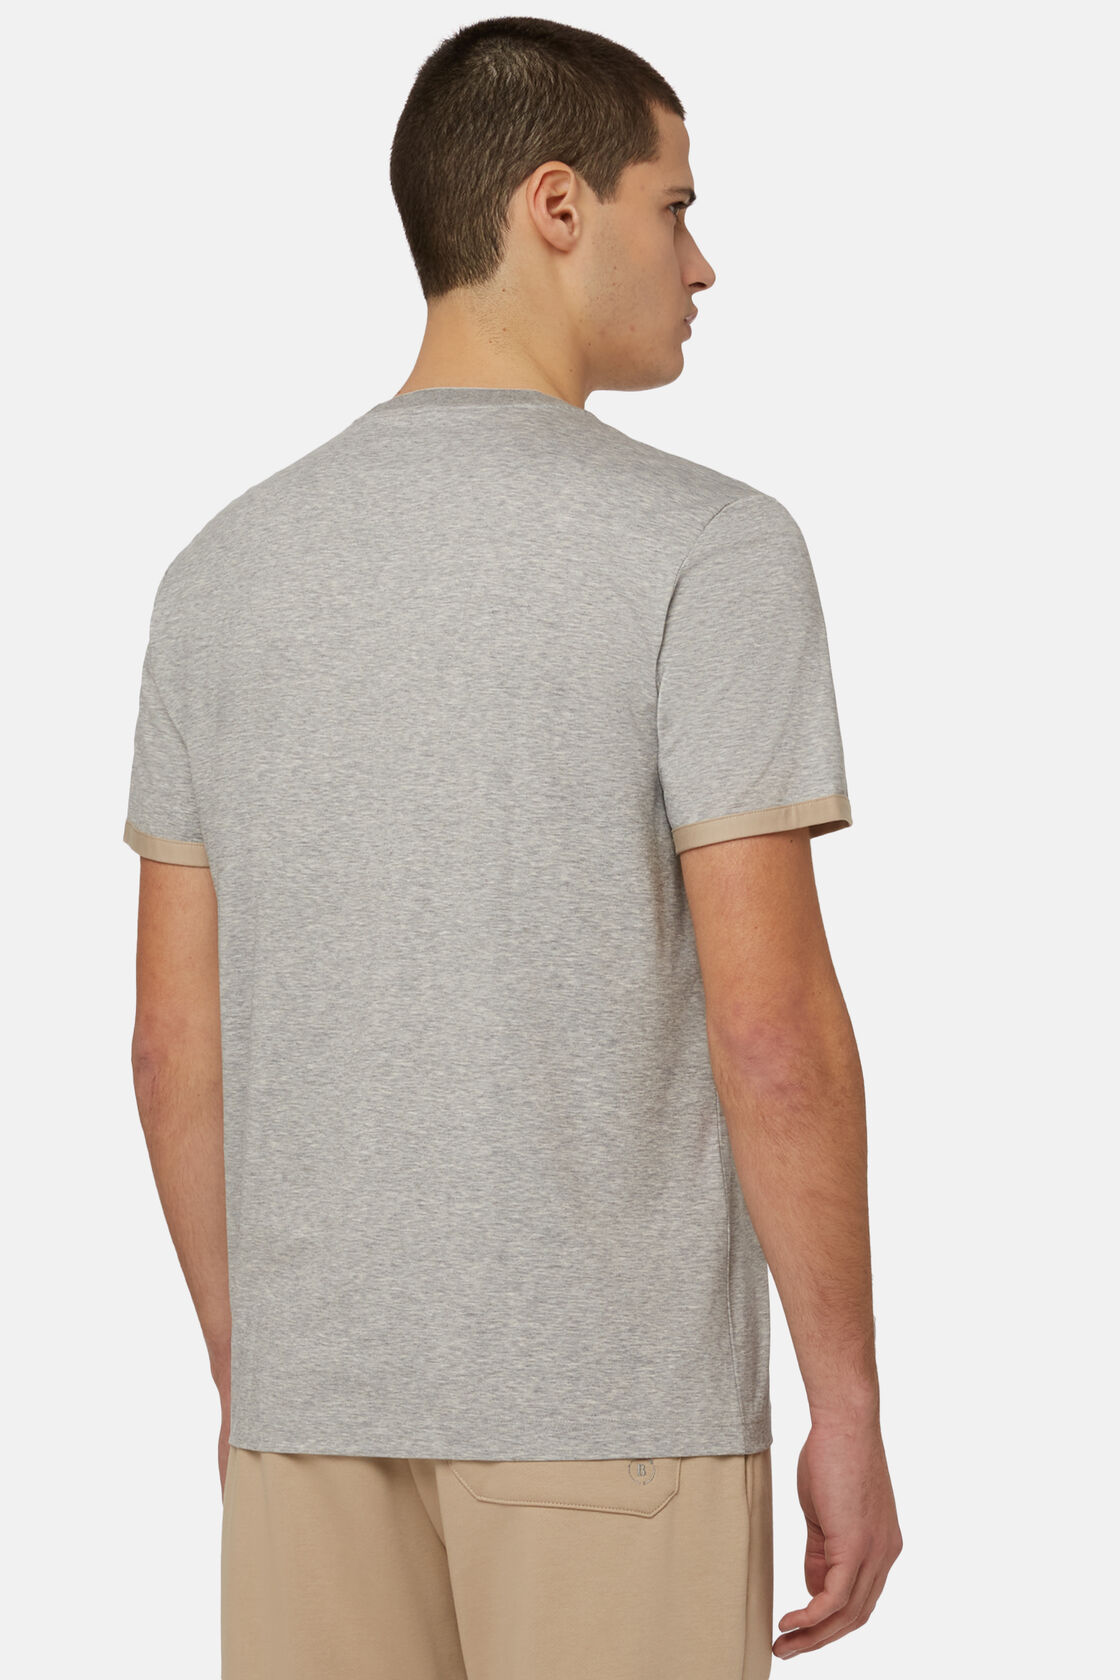 T-Shirt Aus Hochwertigem Und Nachhaltigem Jersey, Grau, hi-res